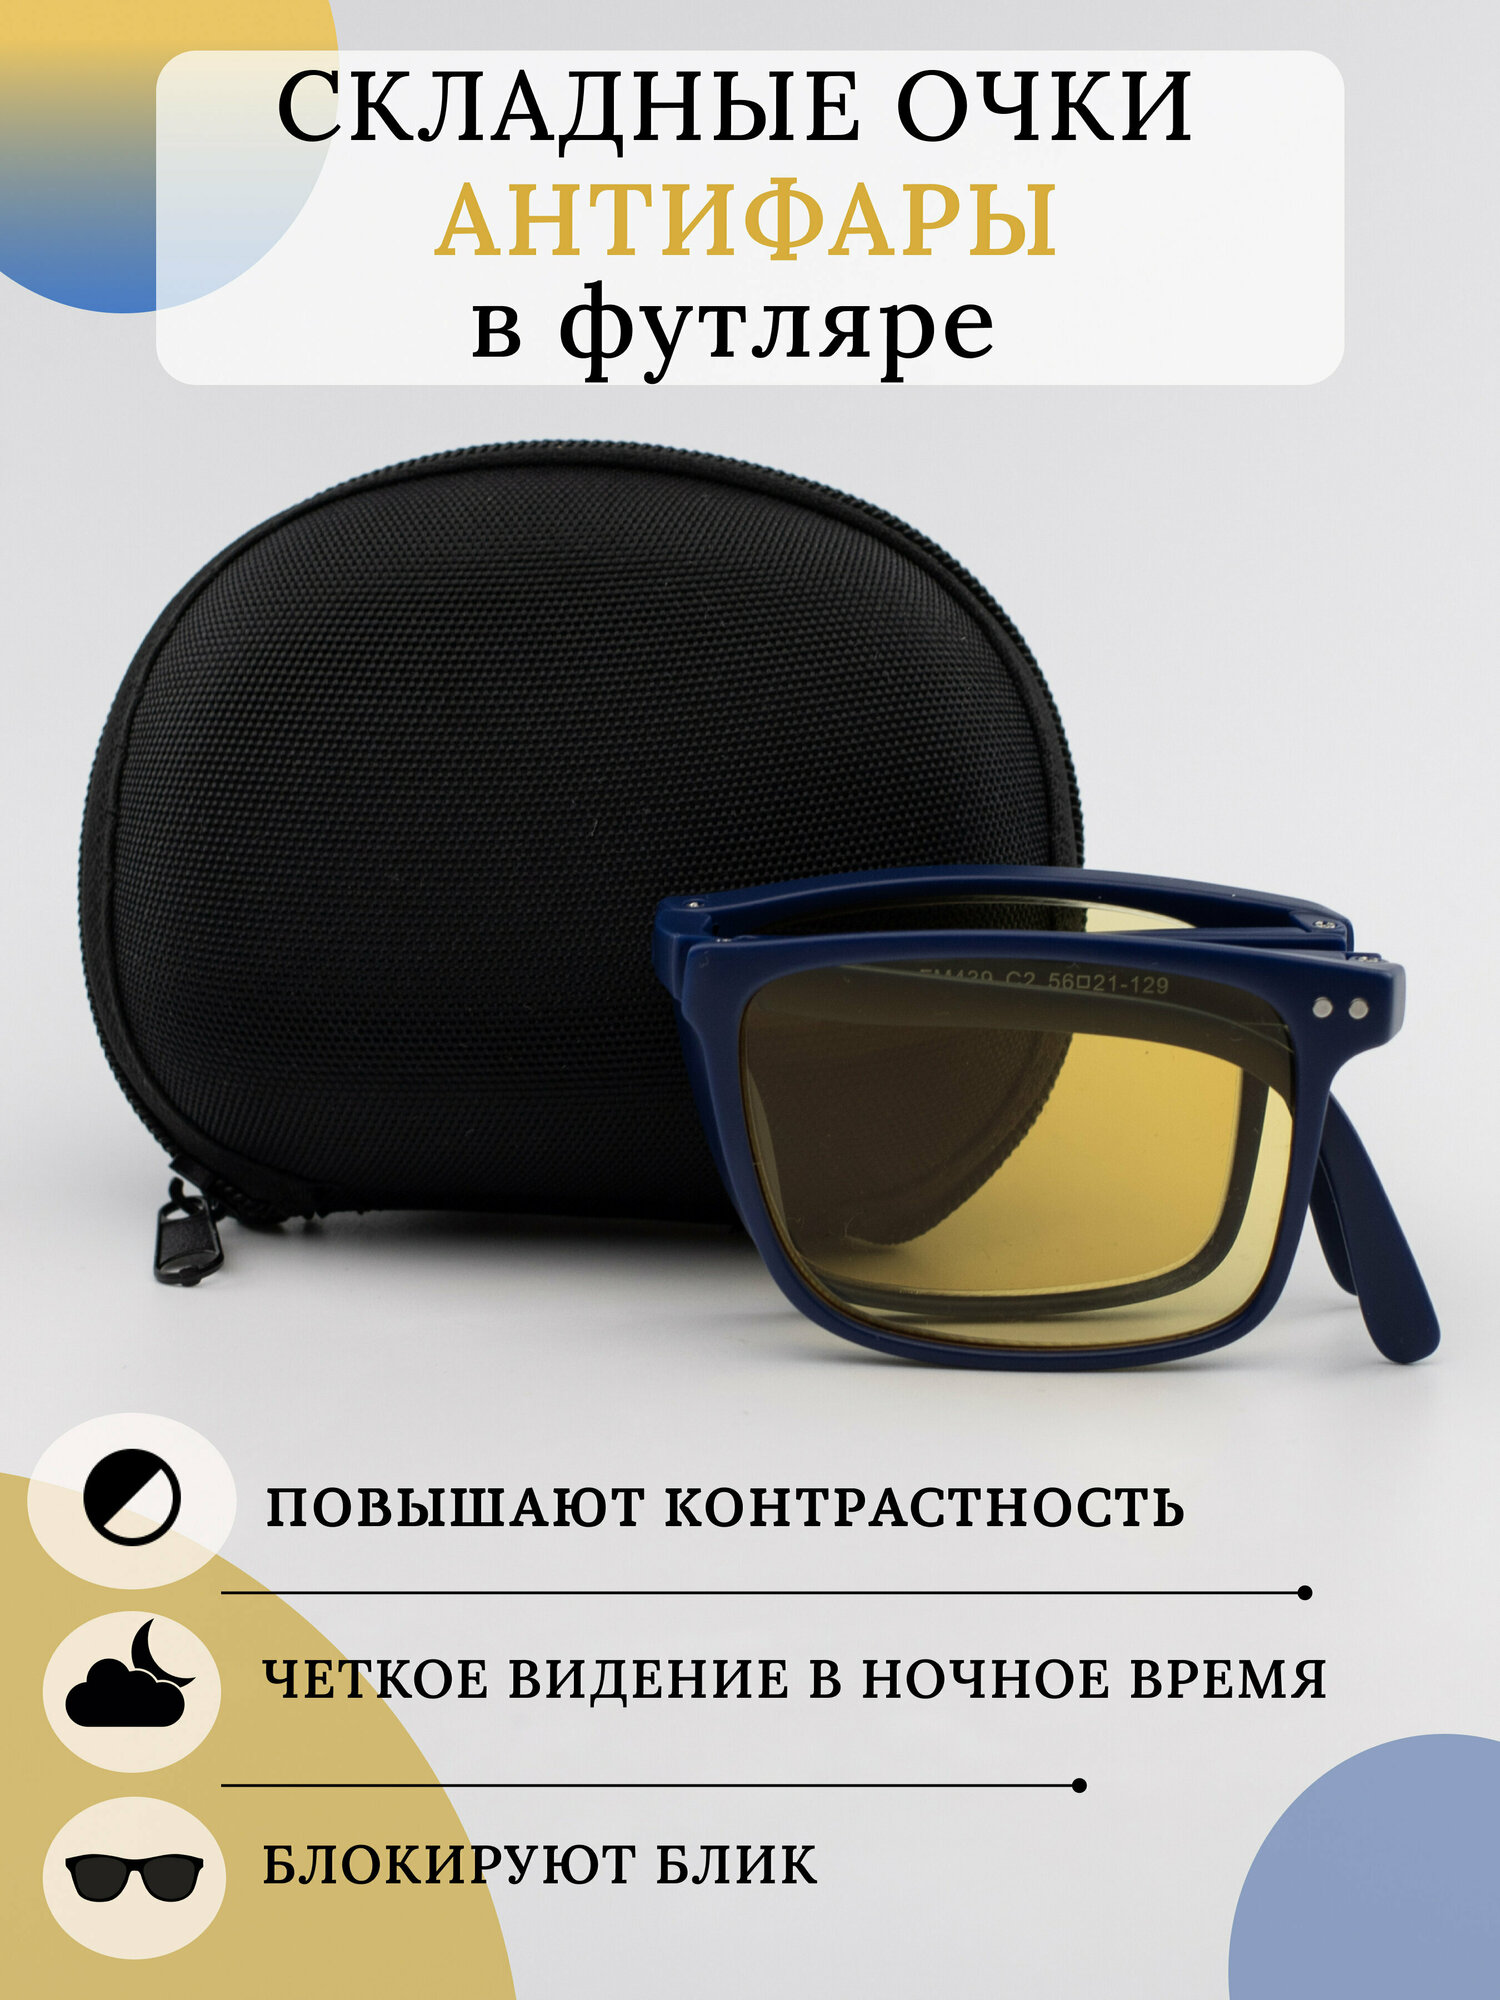 Складные очки для зрения -3.5 / Корригирующие очки с диоптрией -3,5 / Очки для вождения -3.50